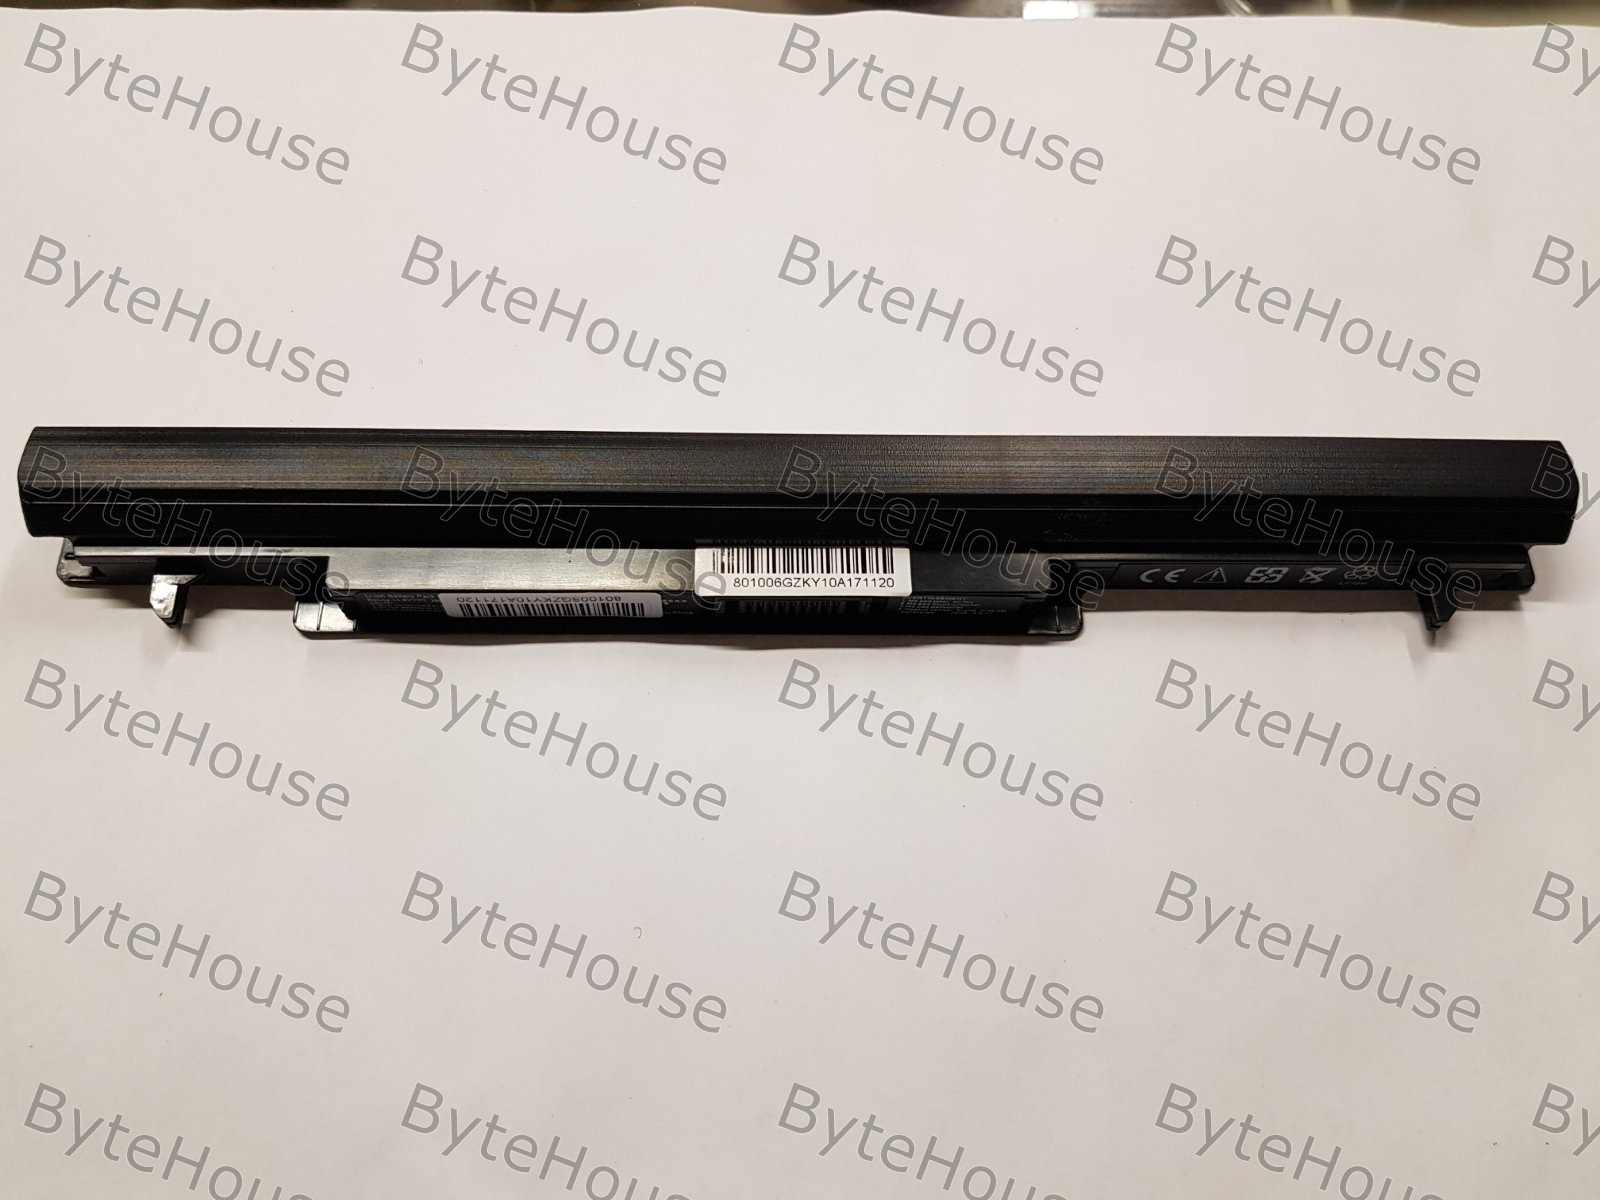 New Battery 2600mAh black for Asus A46 Ultrabook / A46C / A46CA / A46CA-WX043D